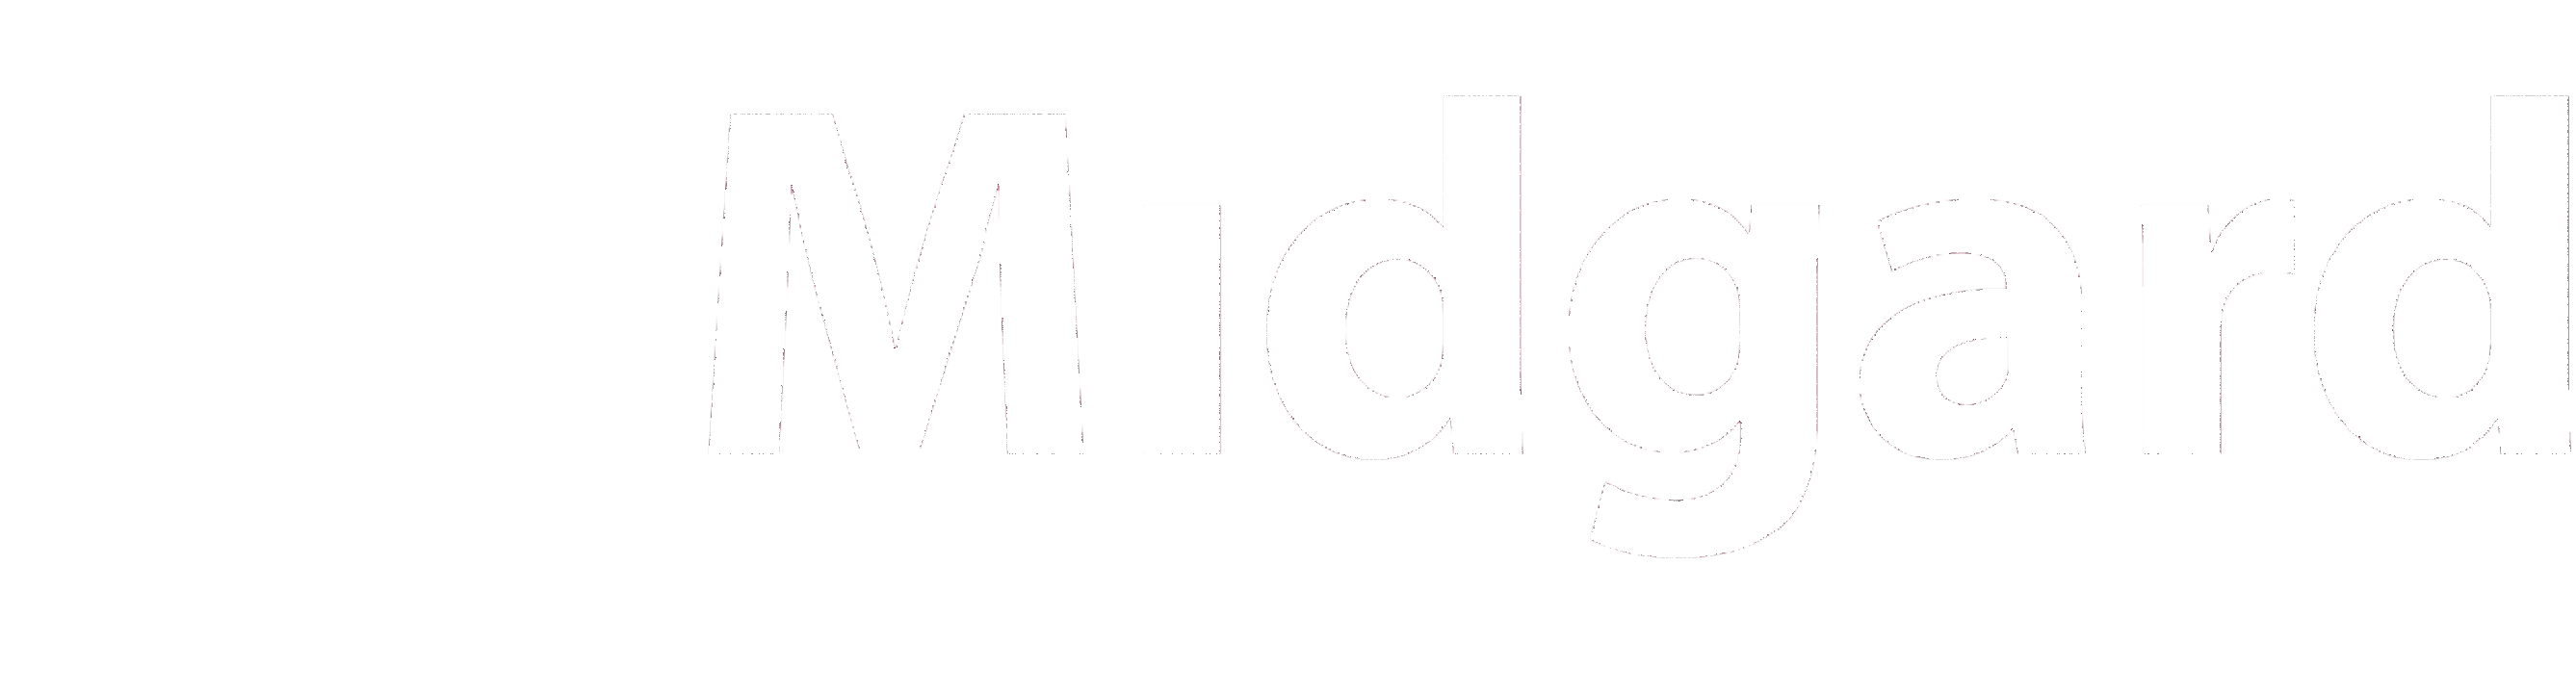 Midgard Oilfield Services